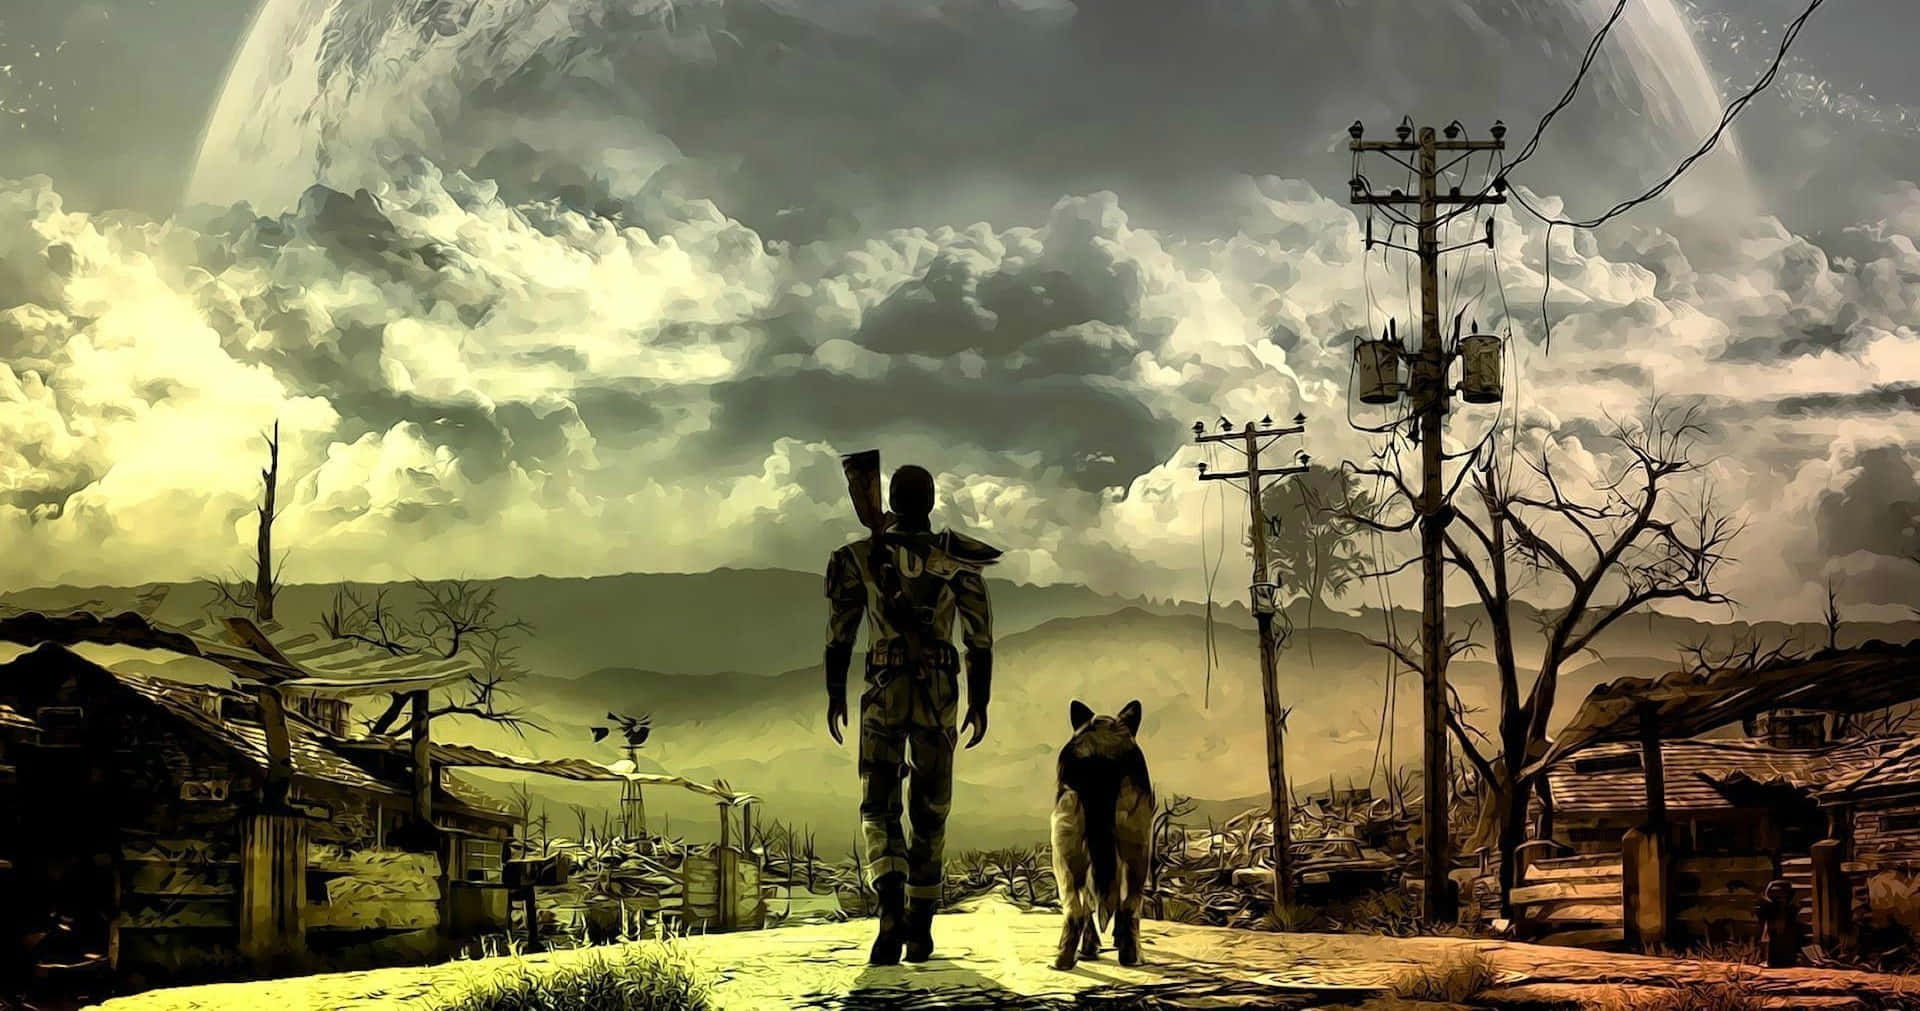 Återuppbyggoch Erövra Commonwealth I Fallout 4. Wallpaper